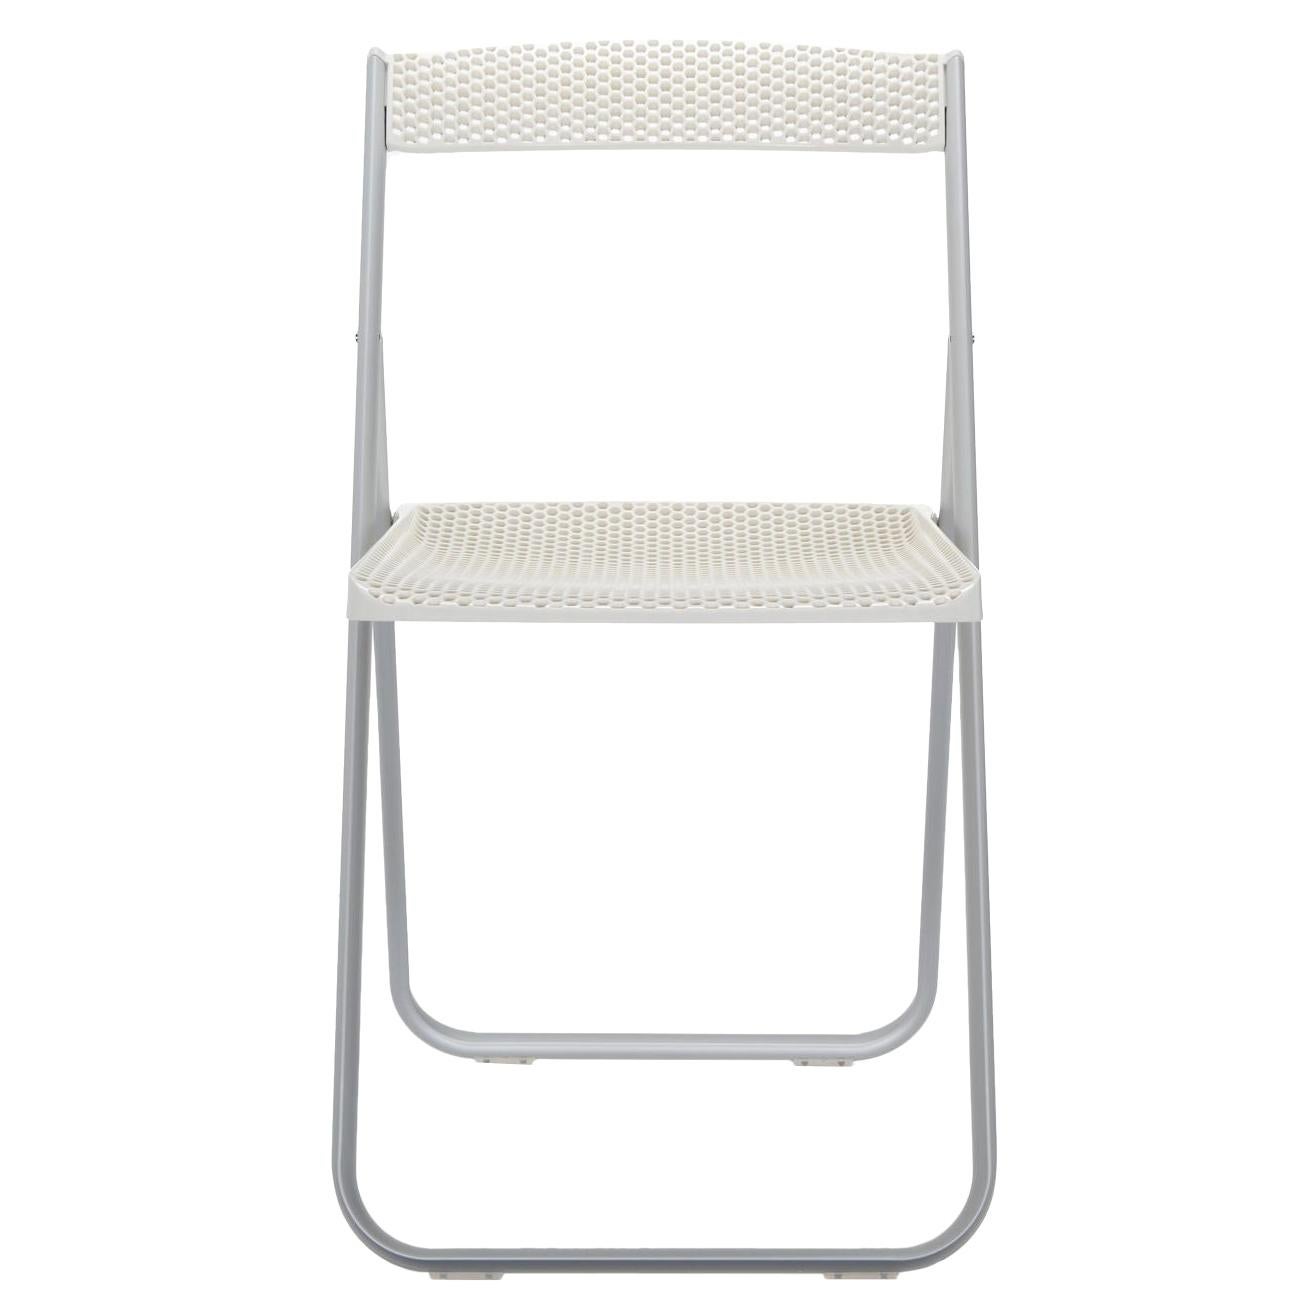 Wabenförmiger klappbarer Kartell-Stuhl in glänzendem Weiß von Alberto Media